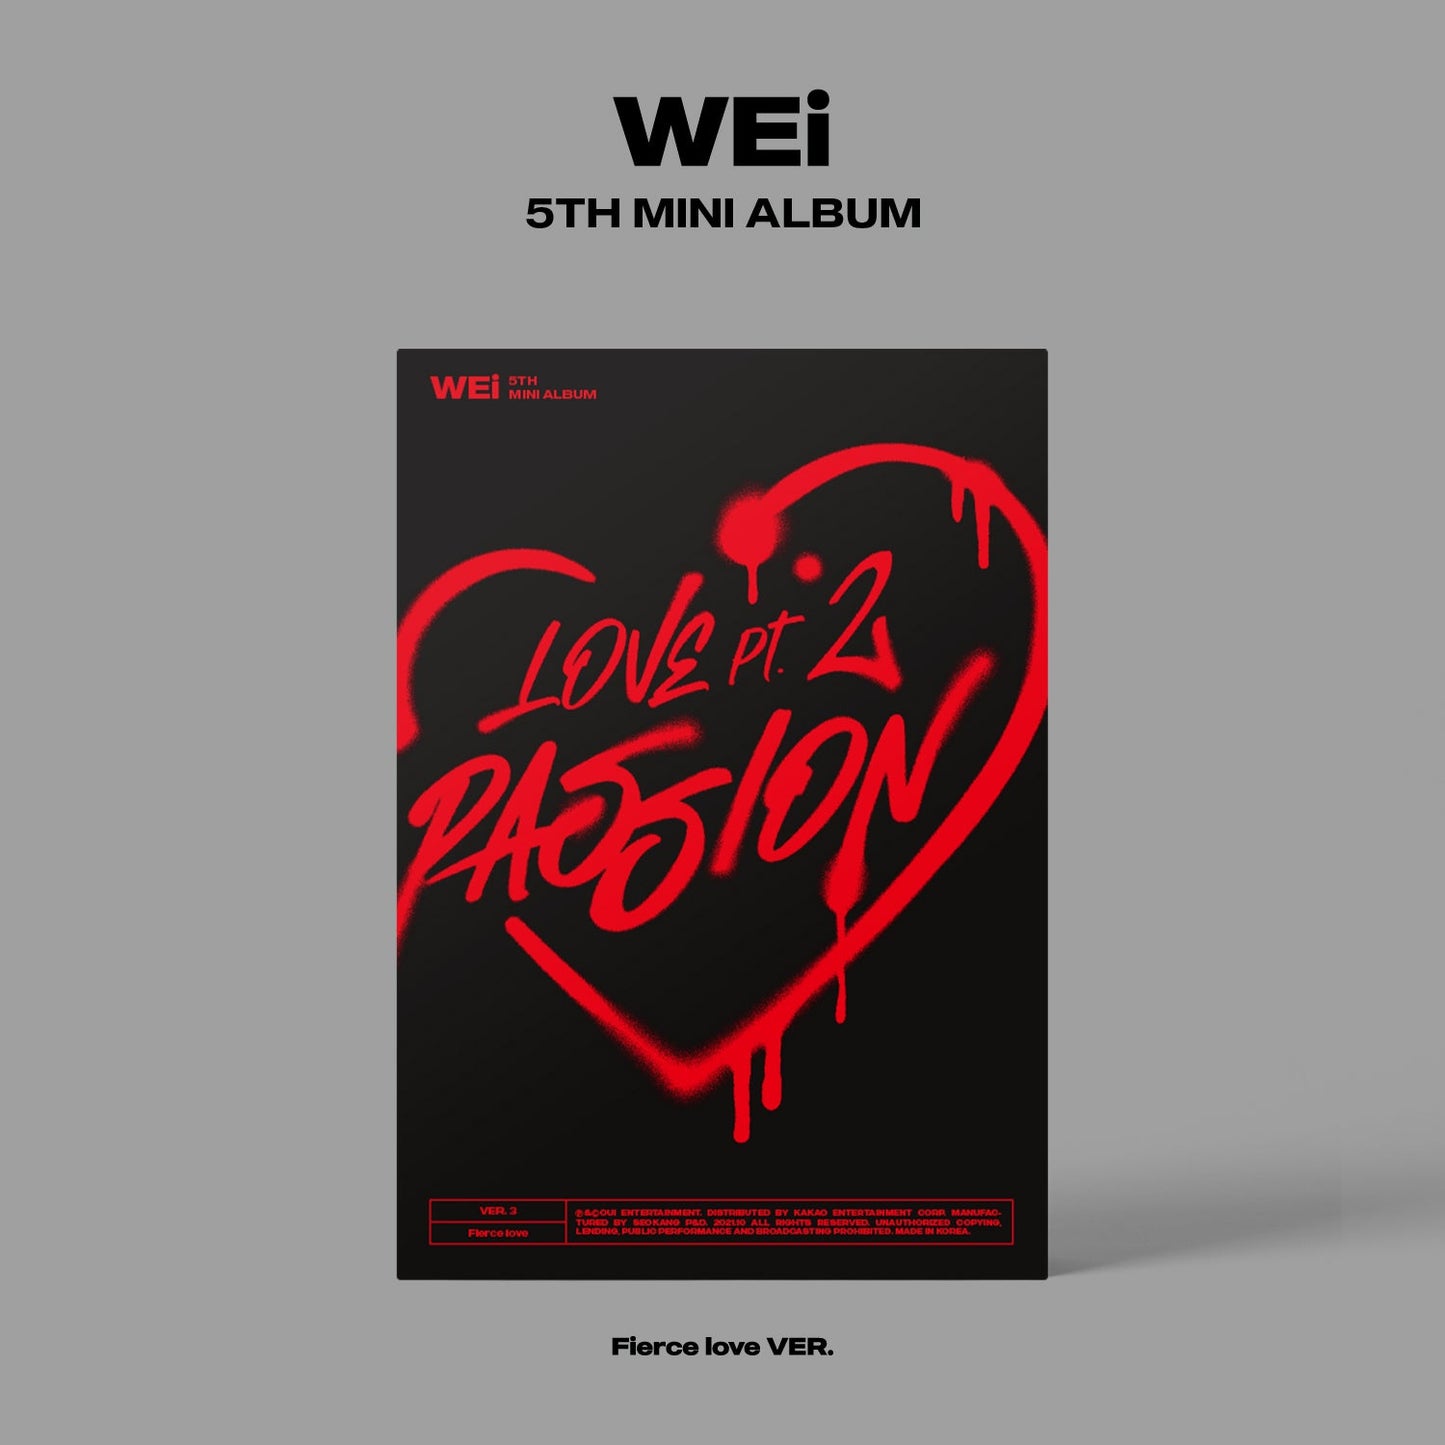 WEI 5TH MINI ALBUM 'LOVE PT.2 : PASSION' FIERCE LOVE COVER